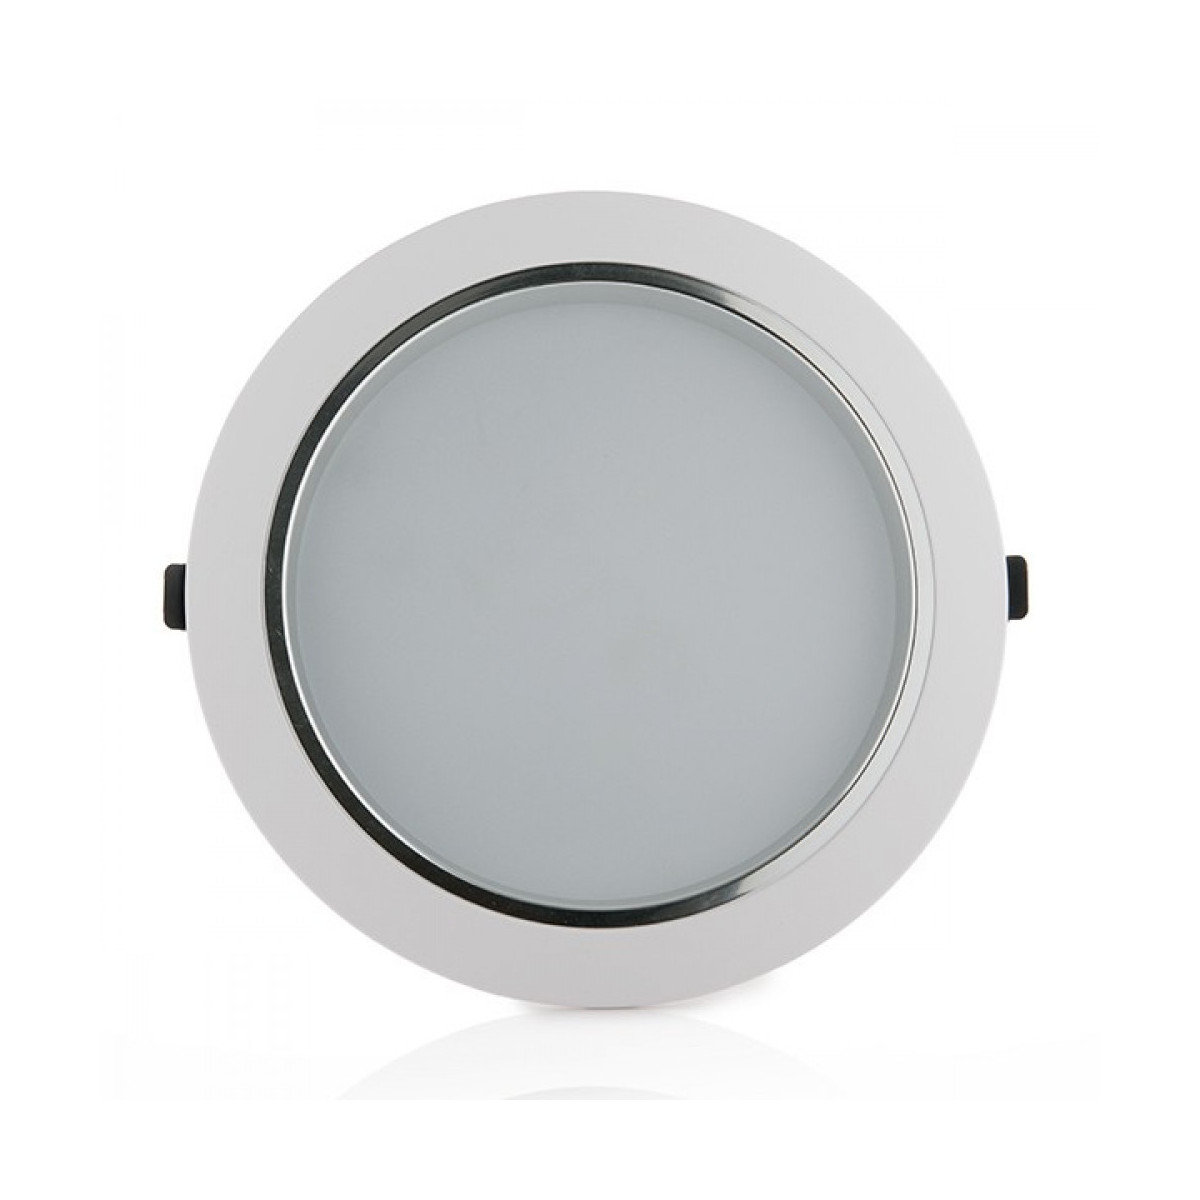 LED Downlight - White Frame, Wide Beam, 12W